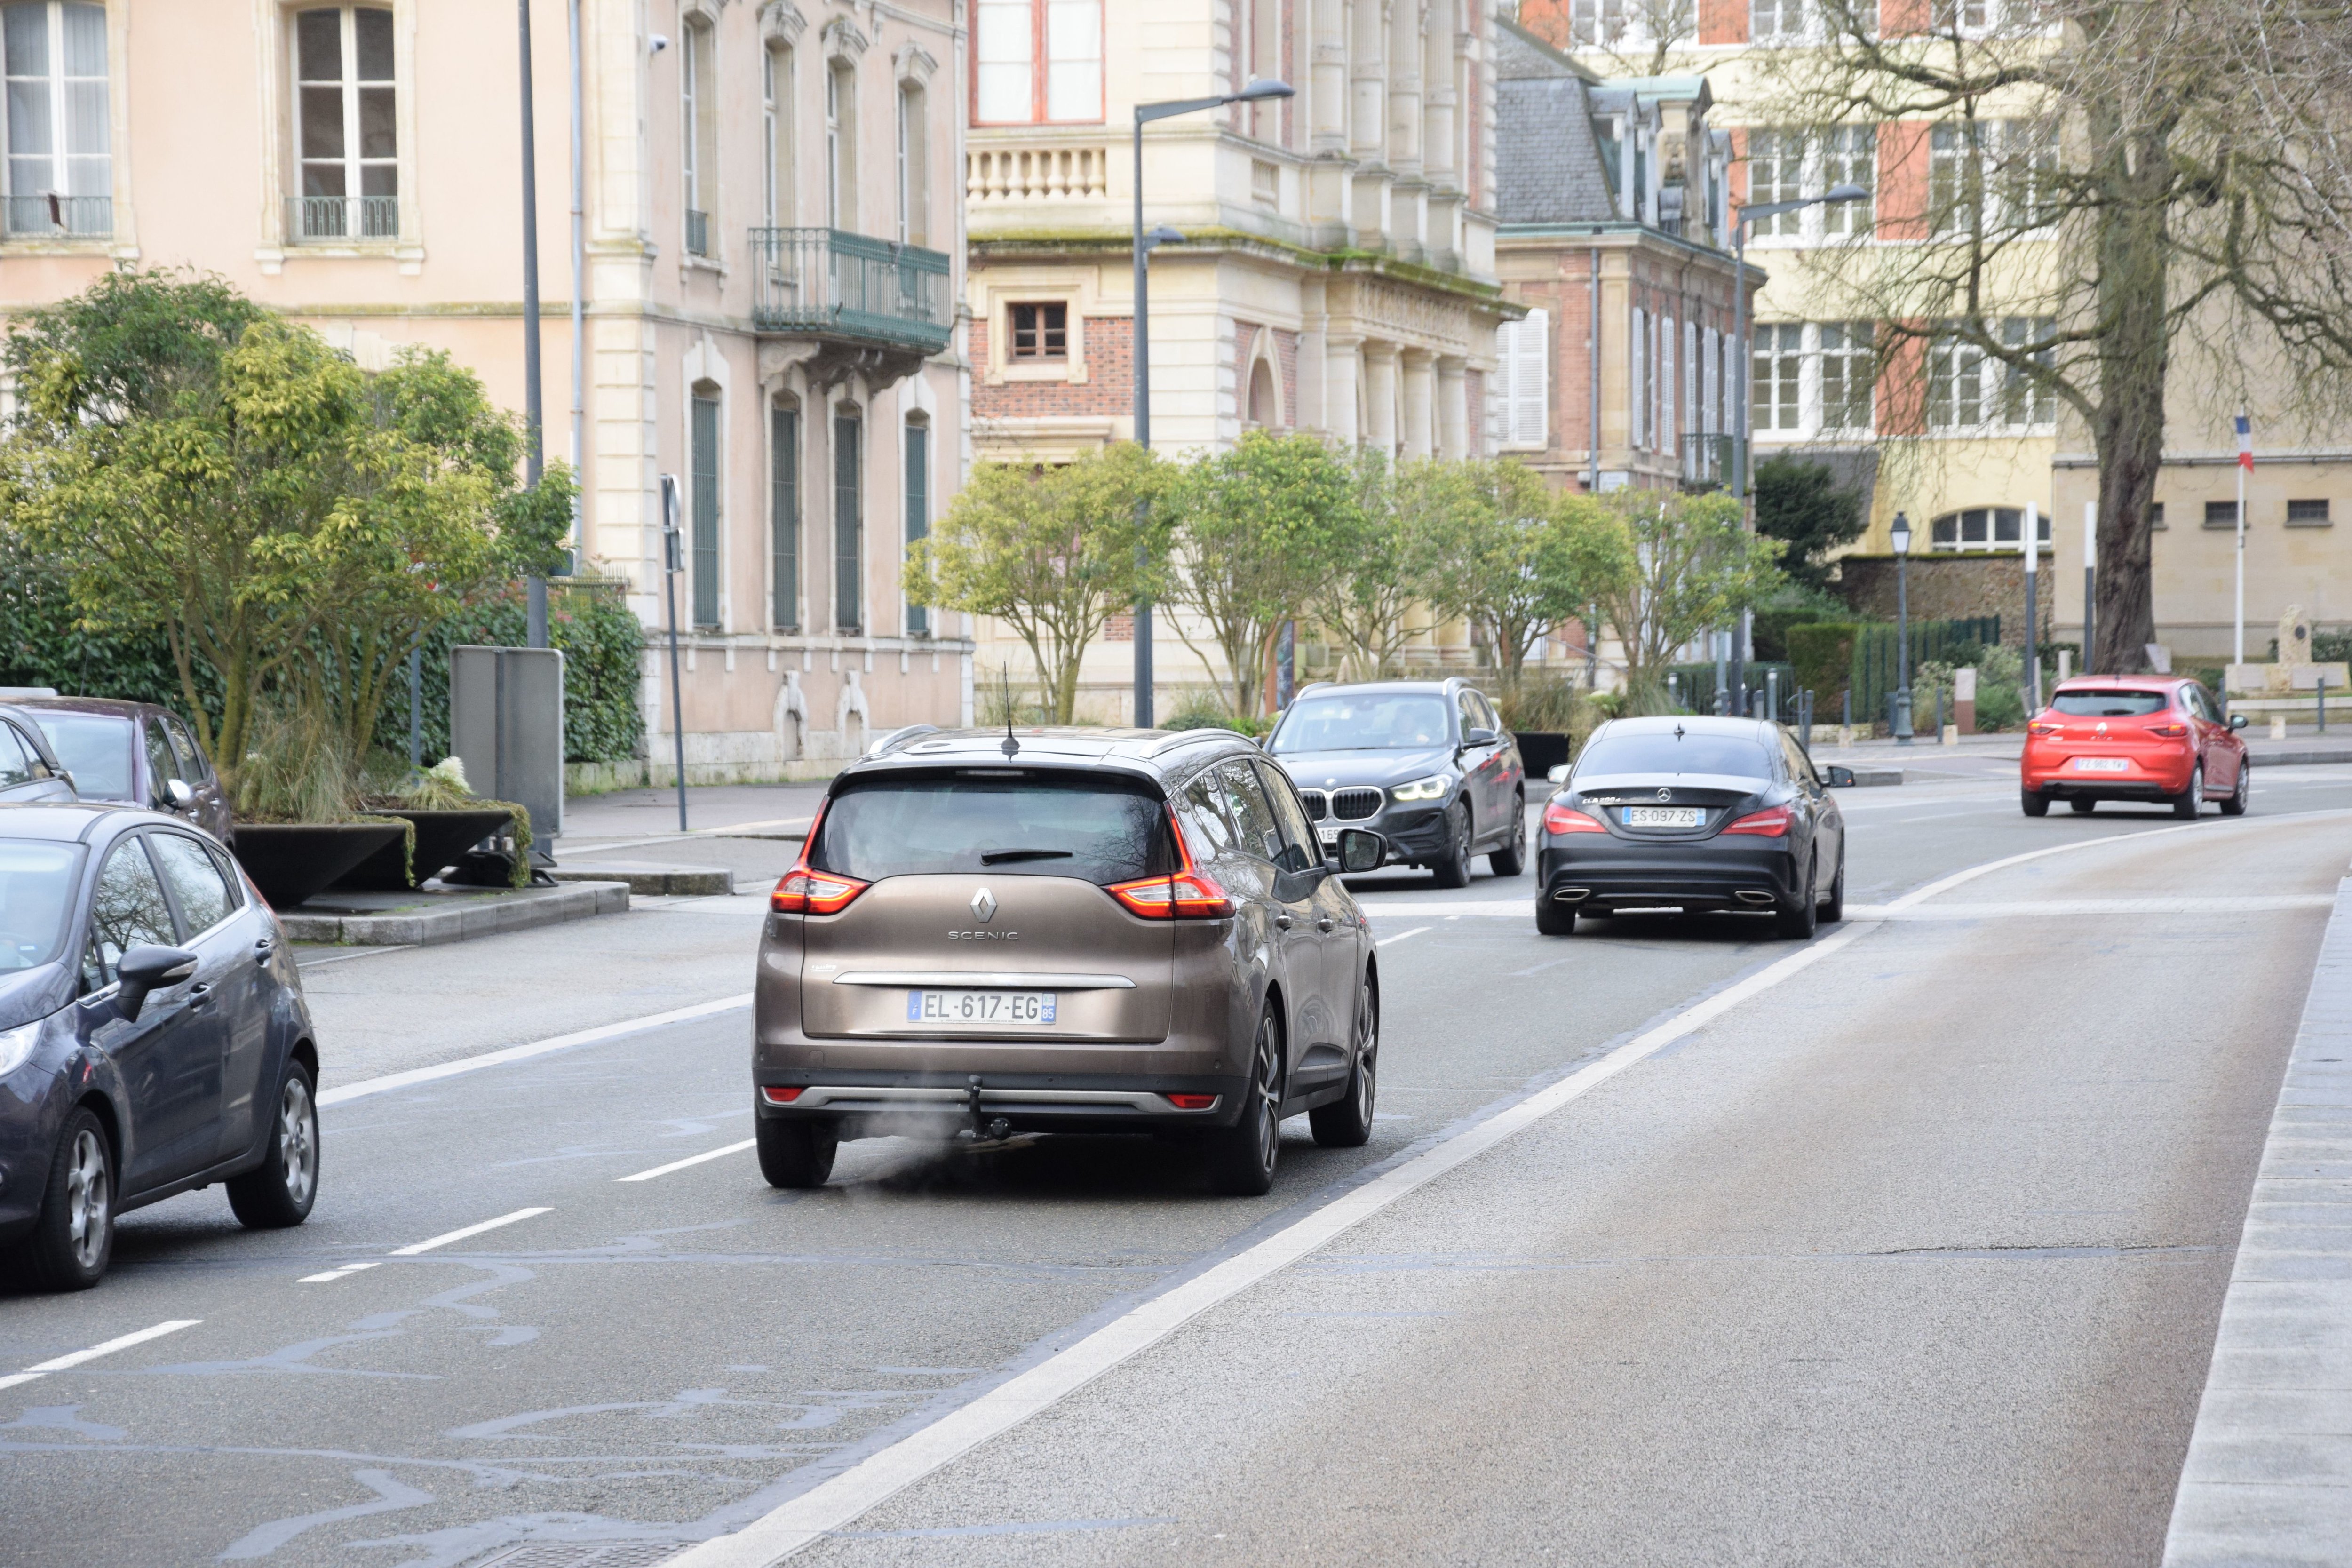 Depuis l'instauration de la limitation de vitesse à 30km/h à Chartres (Eure-et-Loir), les émissions de dioxyde d'azote (NO2) ont baissé de 67% estime l'association Chartravélo./LP/Christophe Blondel